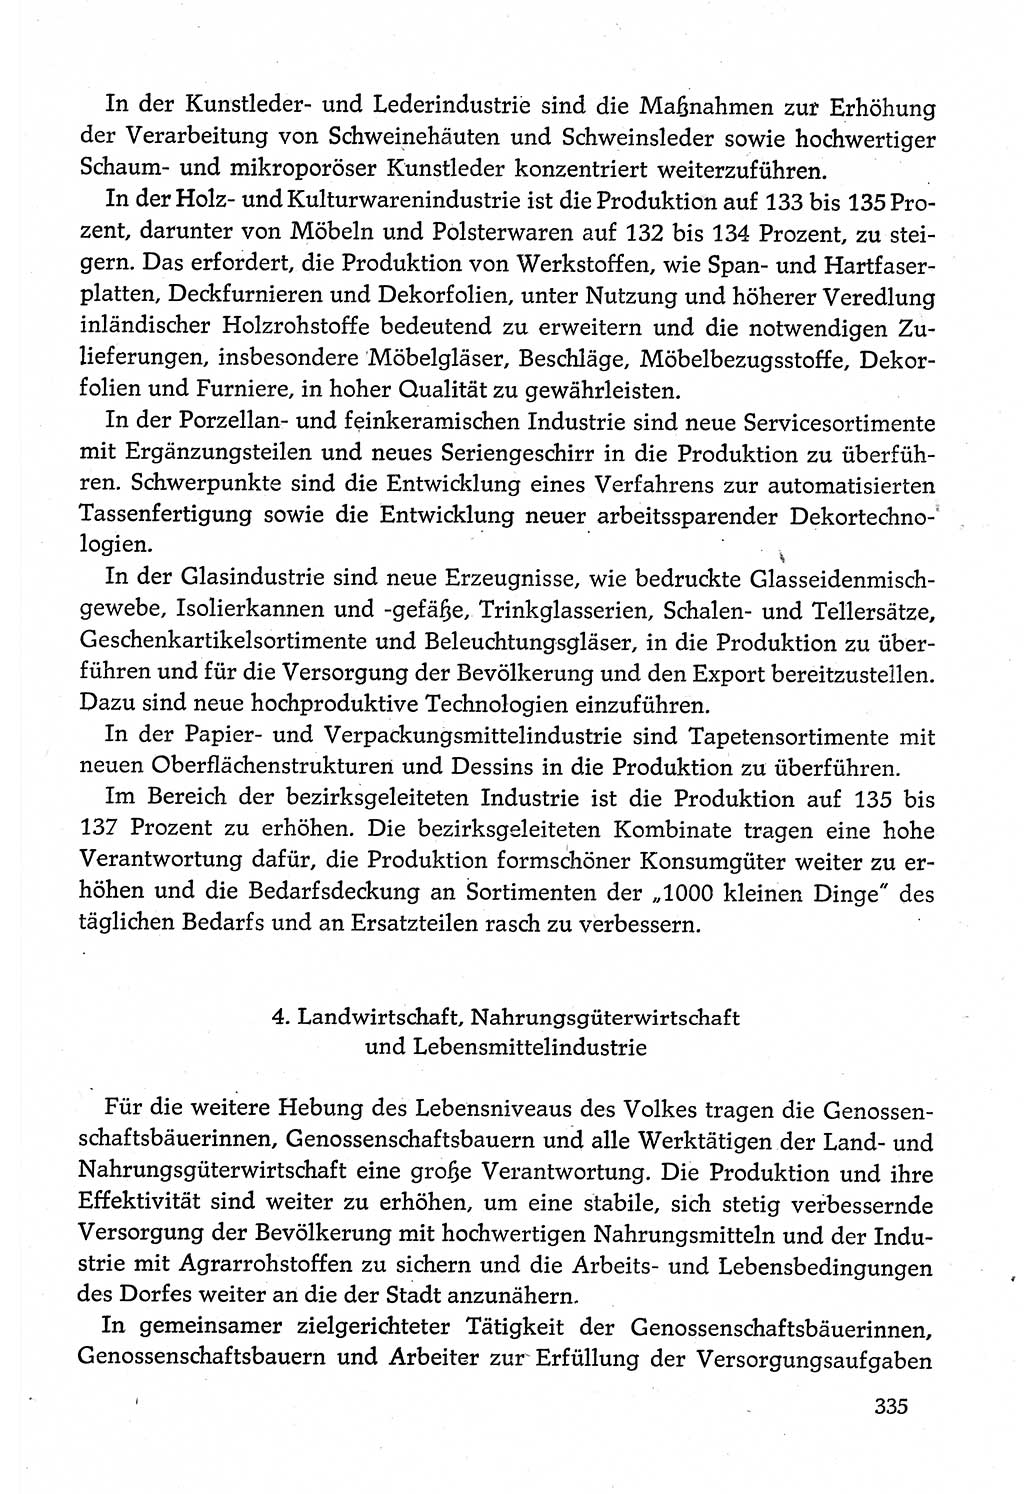 Dokumente der Sozialistischen Einheitspartei Deutschlands (SED) [Deutsche Demokratische Republik (DDR)] 1980-1981, Seite 335 (Dok. SED DDR 1980-1981, S. 335)